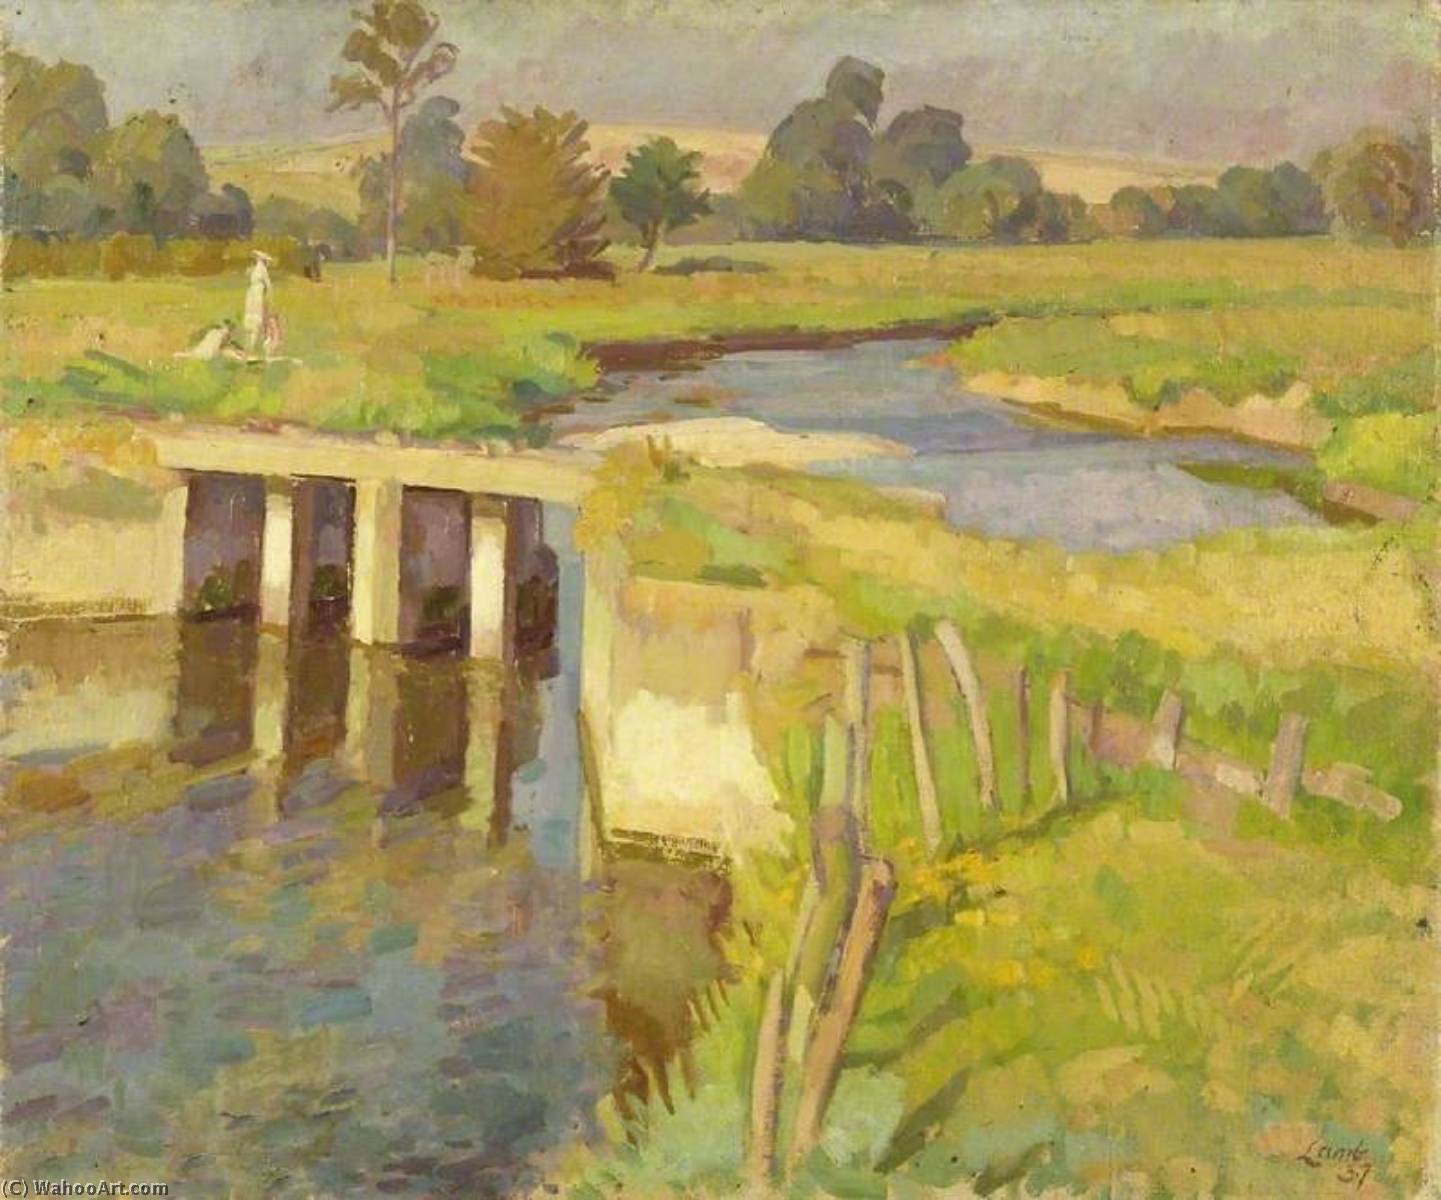 Wikioo.org - Bách khoa toàn thư về mỹ thuật - Vẽ tranh, Tác phẩm nghệ thuật Henry Lamb - The River Ebble, Wiltshire